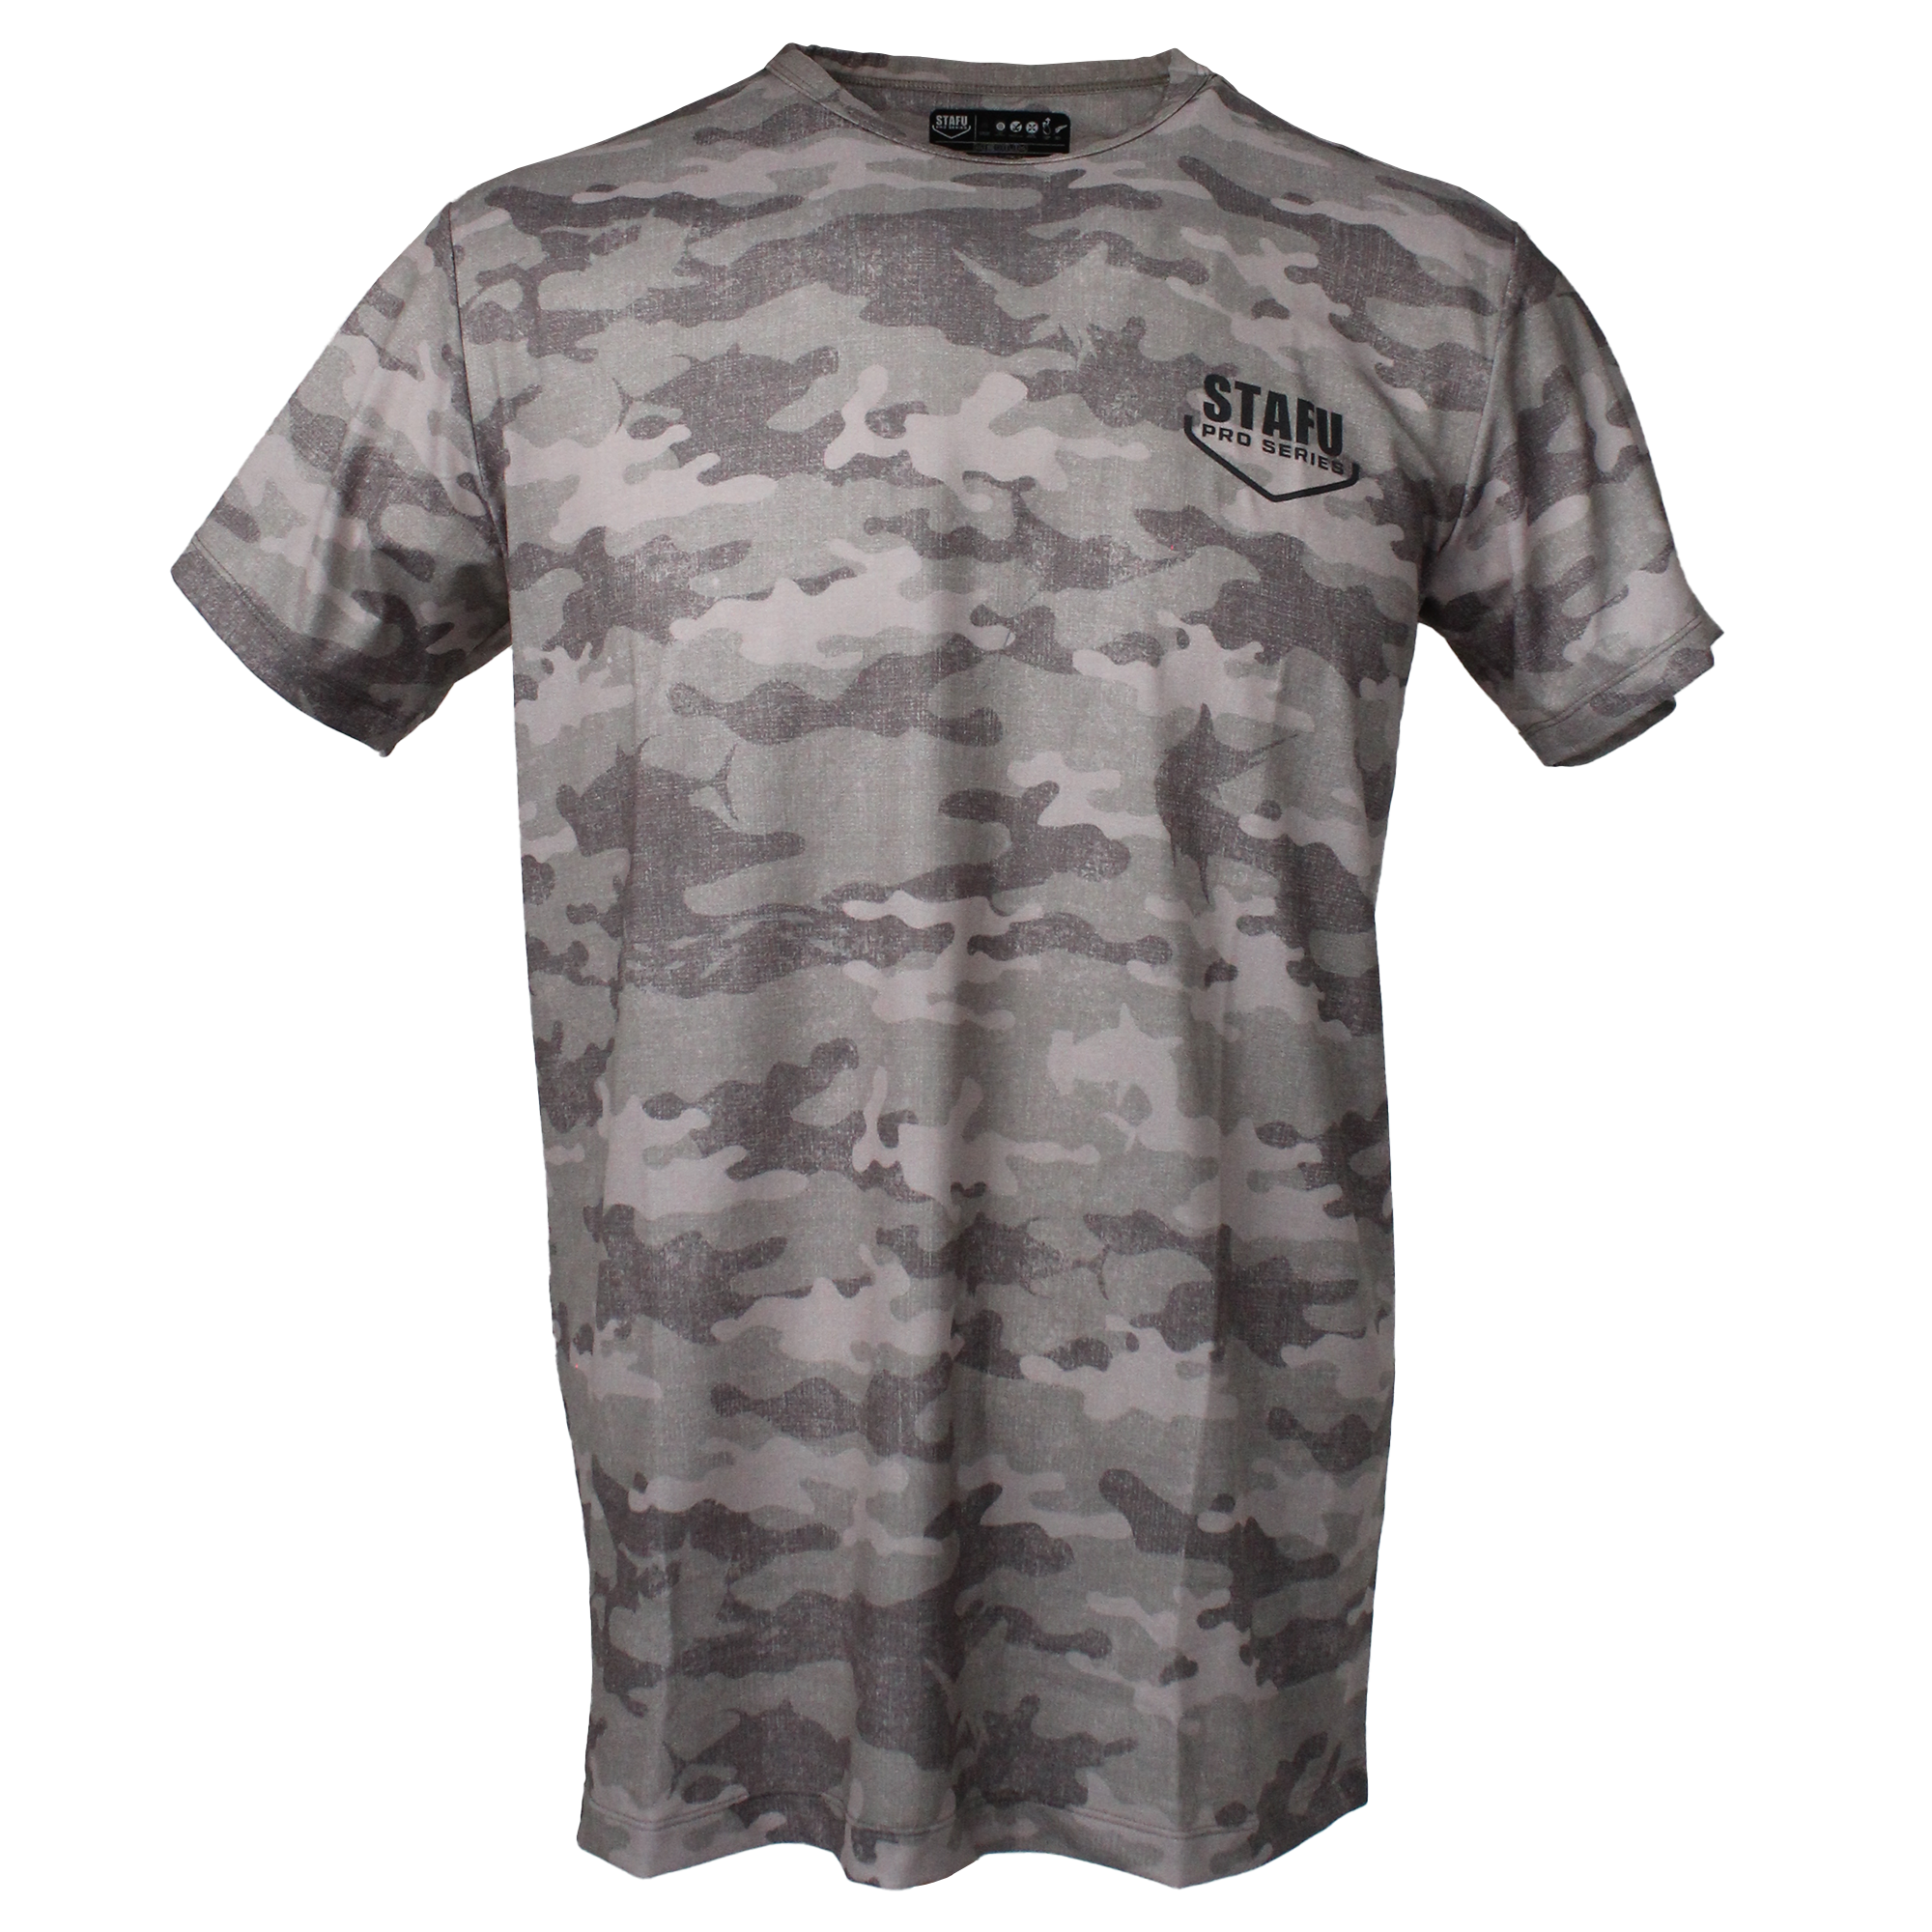 .99 Short Sleeve Ultra Light Performance T-Shirt - Camo - Brown